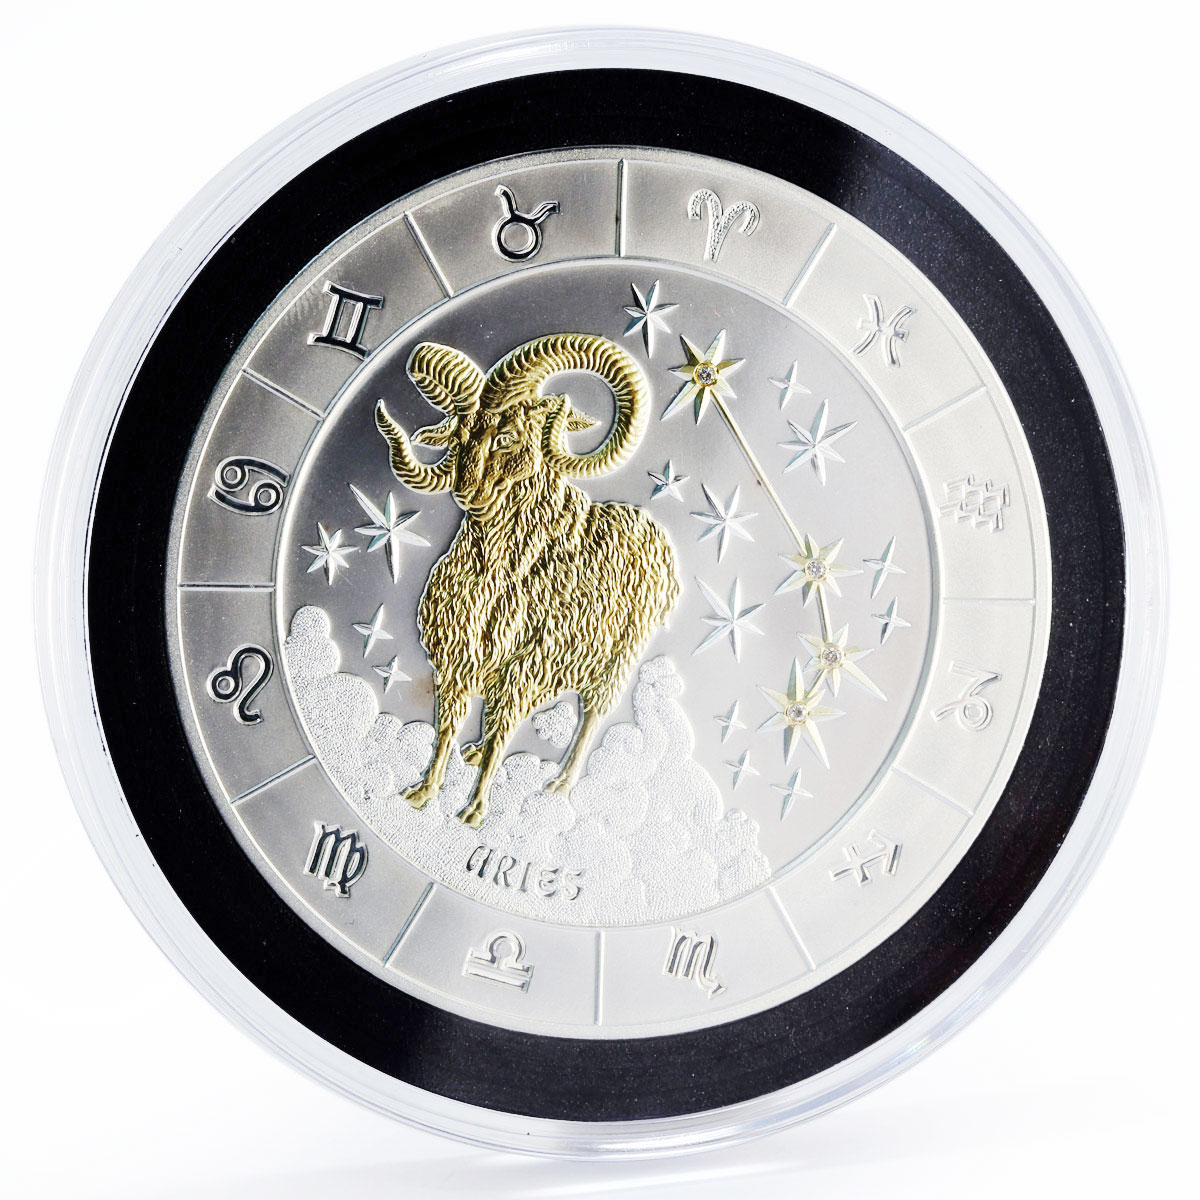 Rwanda 1000 francs Zodiac Signs series Aries gilded silver coin 2009